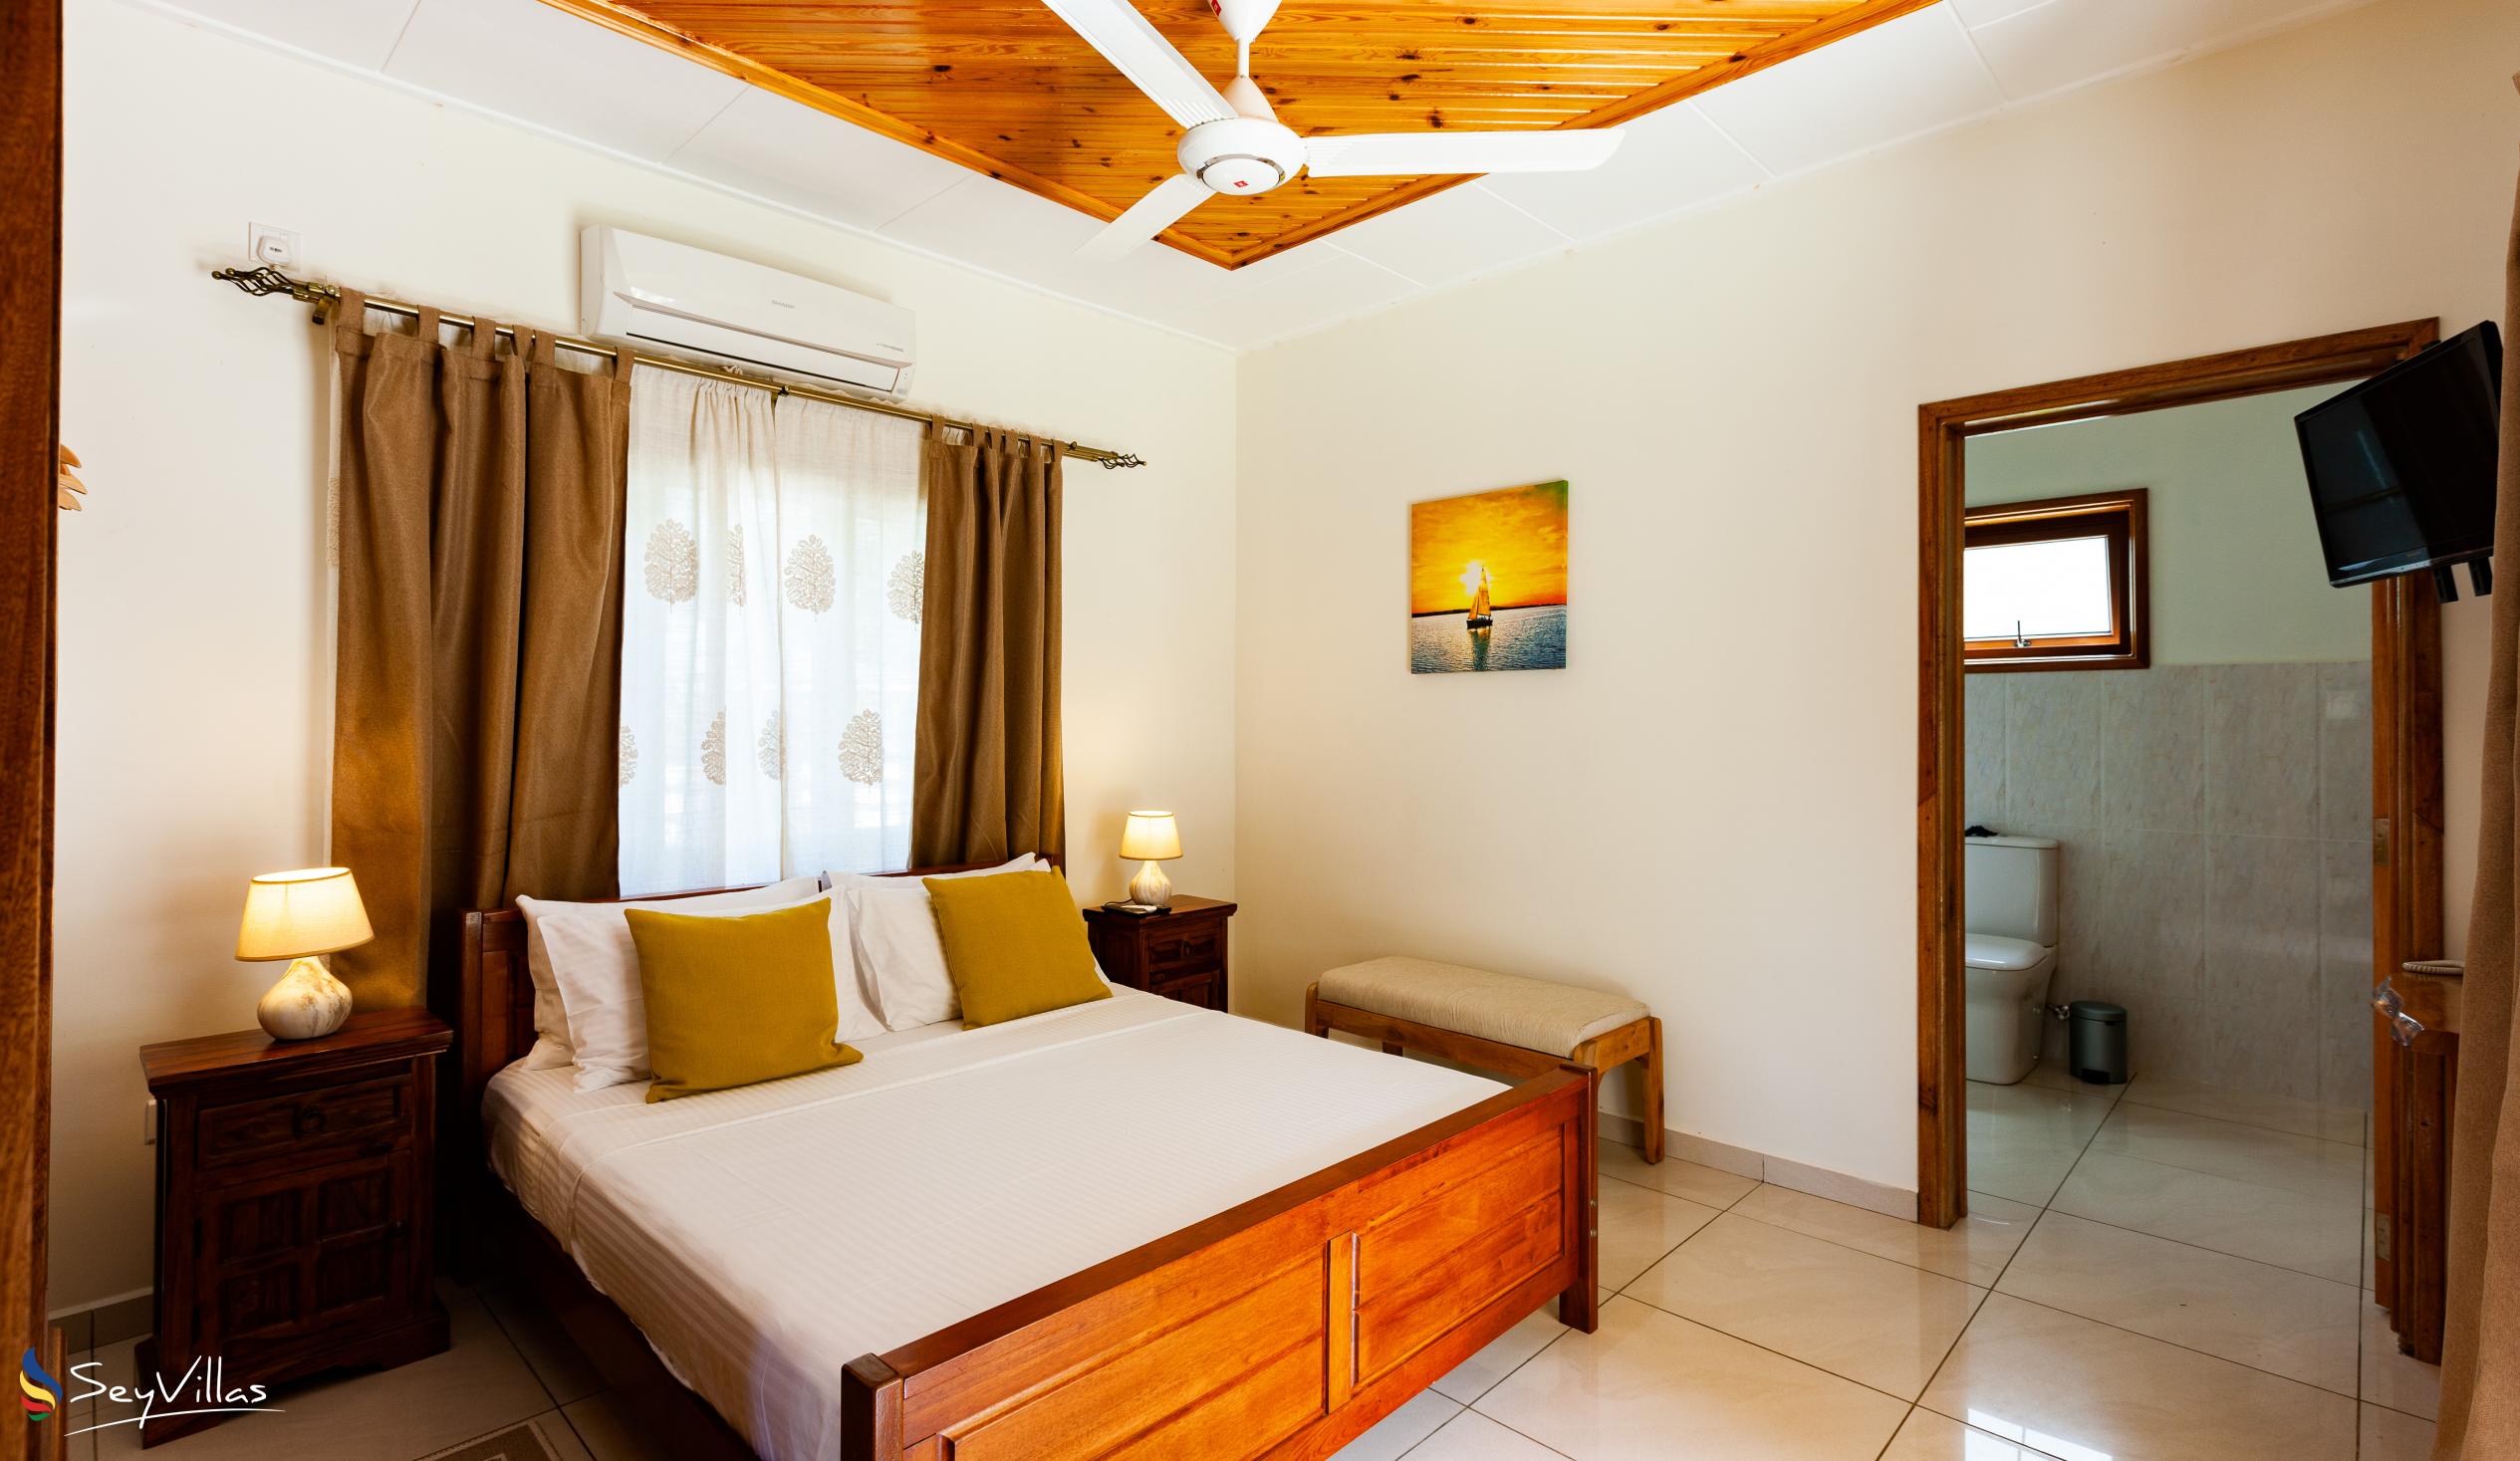 Foto 24: Maison Ed-Elle - Appartement 1 chambre - La Digue (Seychelles)